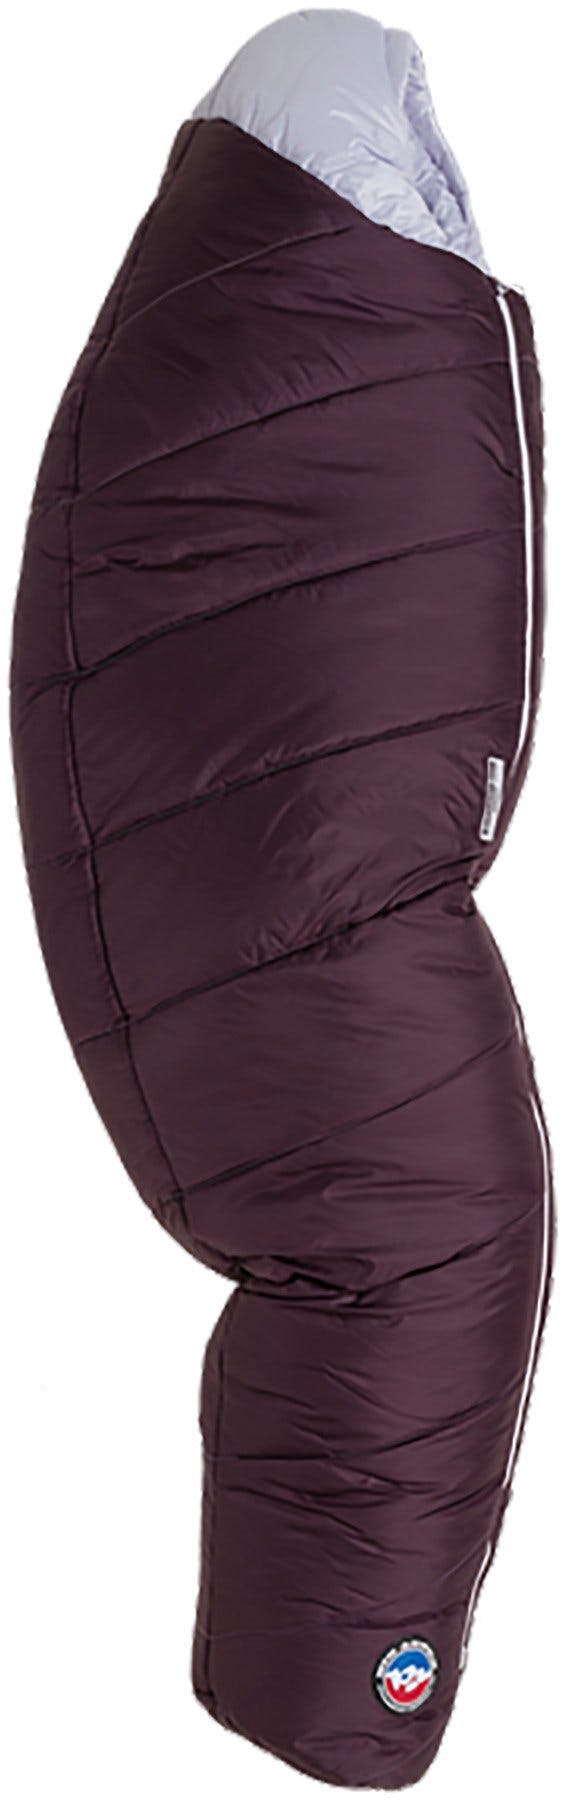 Numéro de l'image de la galerie de produits 1 pour le produit Sac de couchage Sidewinder Camp 20 °F/-7 °C Court - Femme